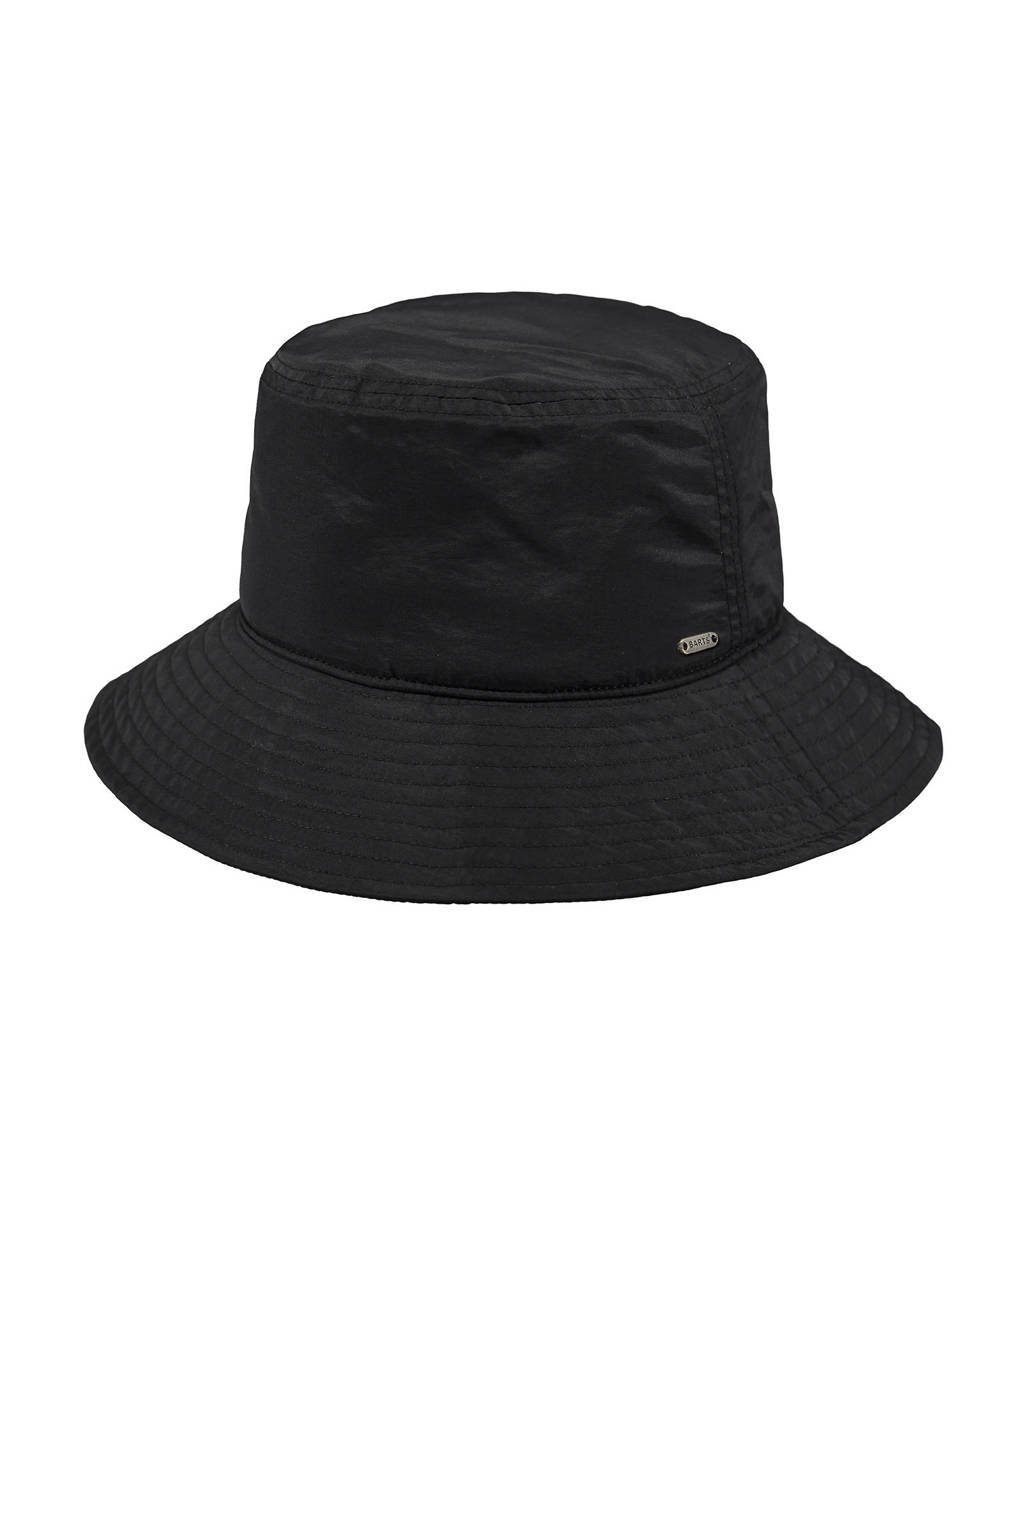 Barts bucket hat Allon zwart, Zwart